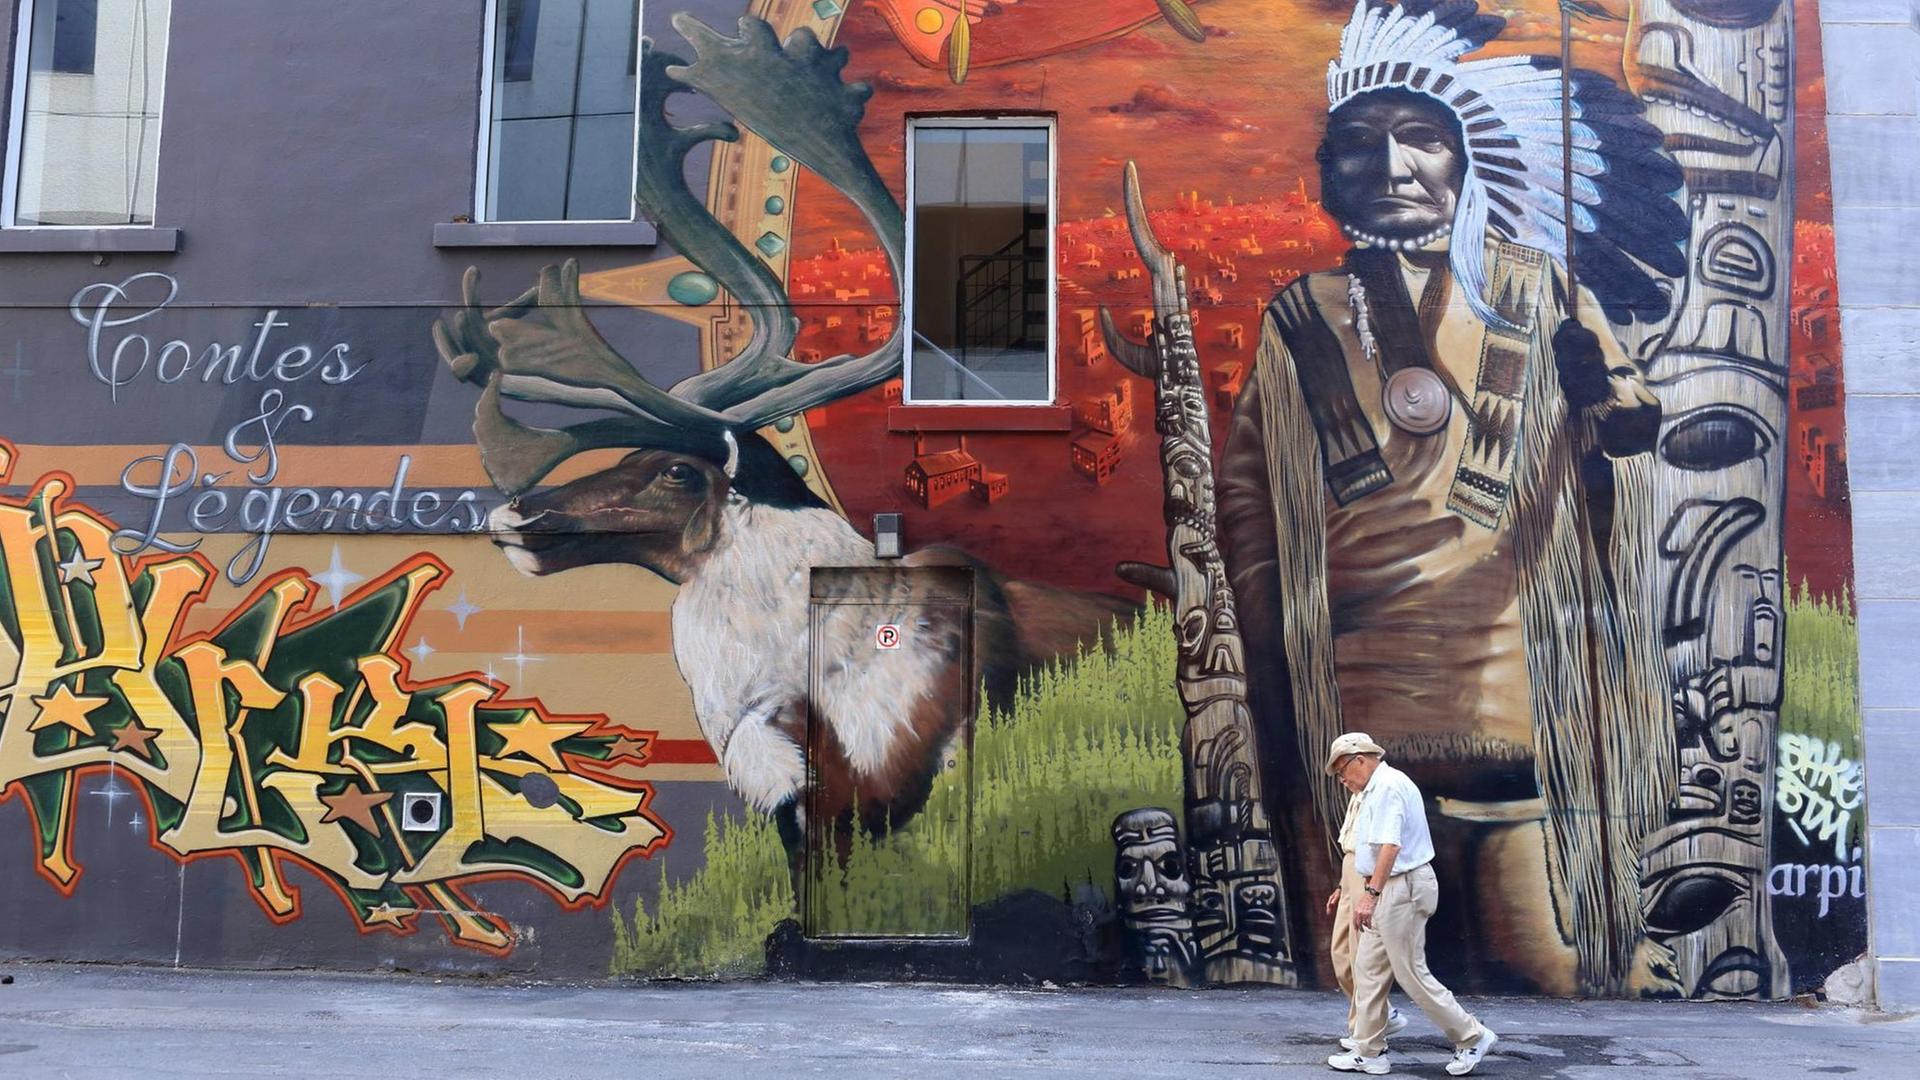 Ein Mann läuft an einer Häuserwand mit einem mit einem Ureinwohnermotiv vorbei